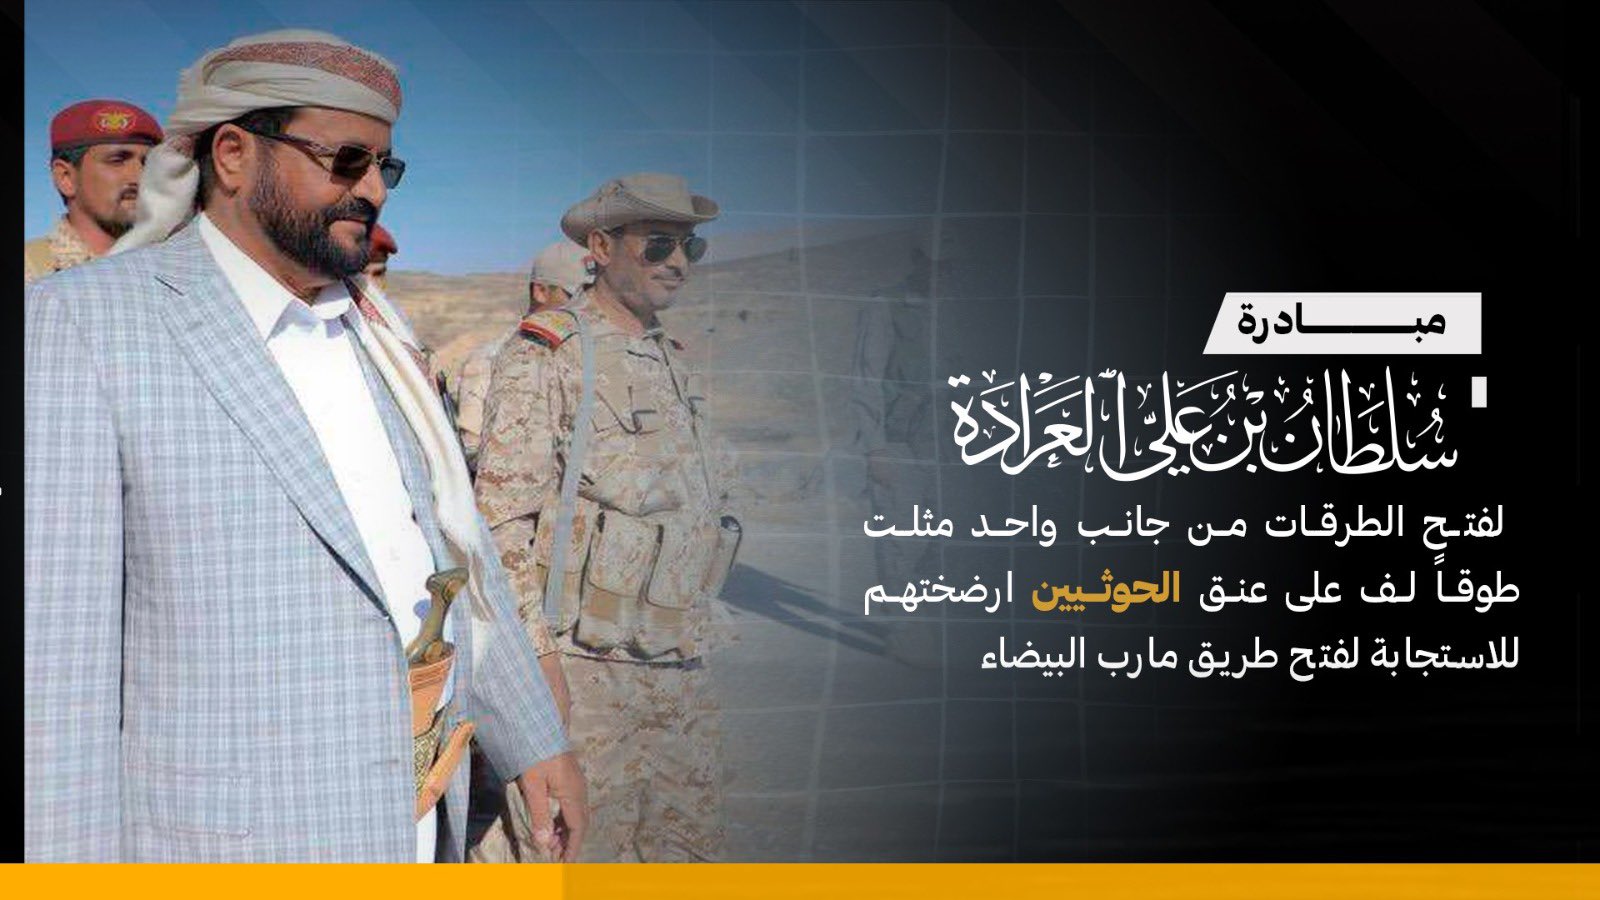 مبادرة شعبية أطلقها اللواء سلطان العراده ارضخت المليشيا الحوثية على الاستجابة  لفتح طريق مأرب البيضاء